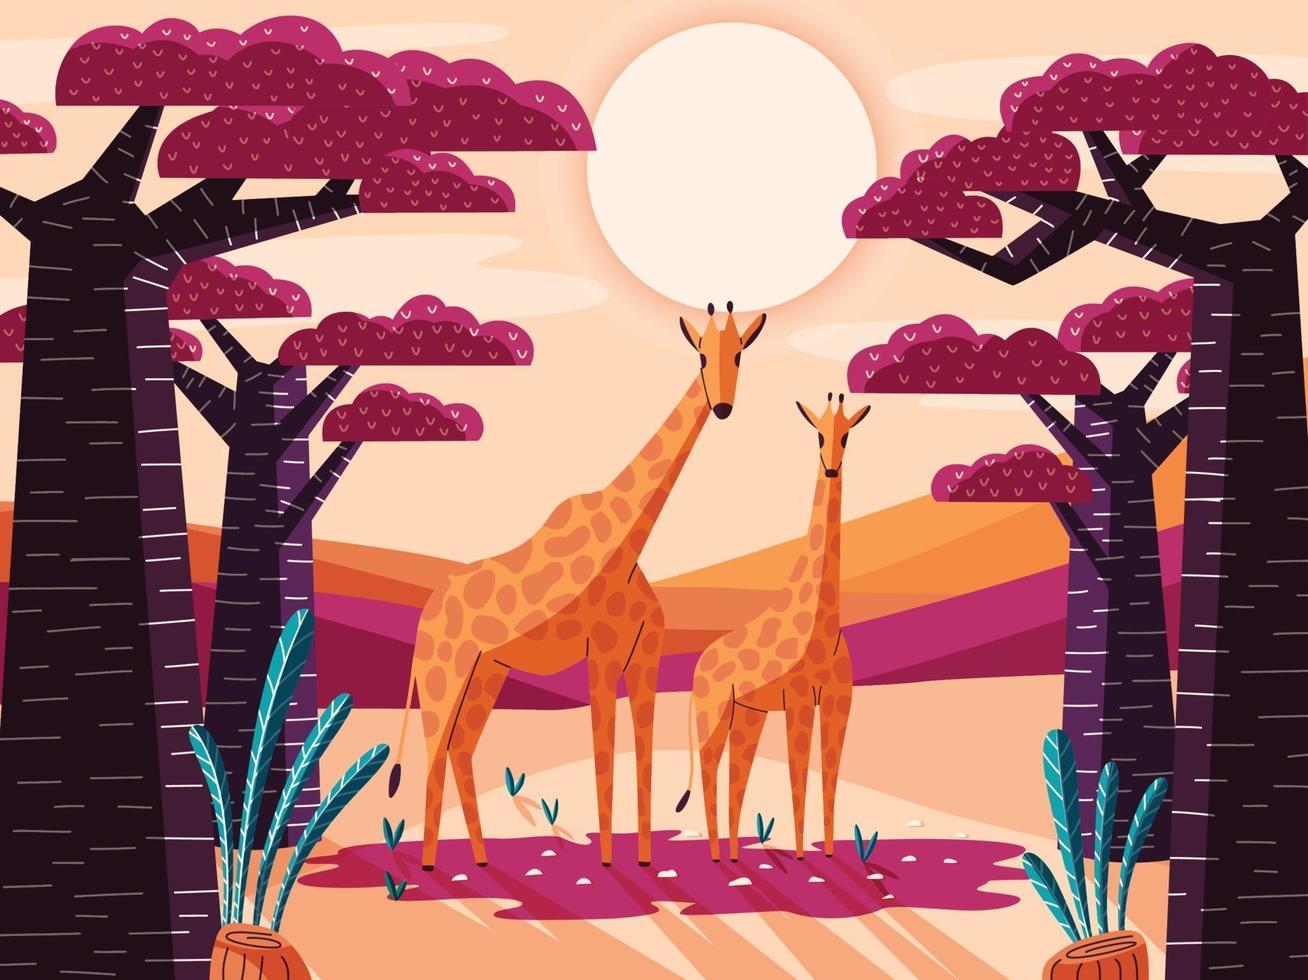 Hermoso paisaje natural de sabana con jirafas y árboles baobab. Ilustración colorida panorámica con animales salvajes. paisajes exóticos de la naturaleza africana. vector